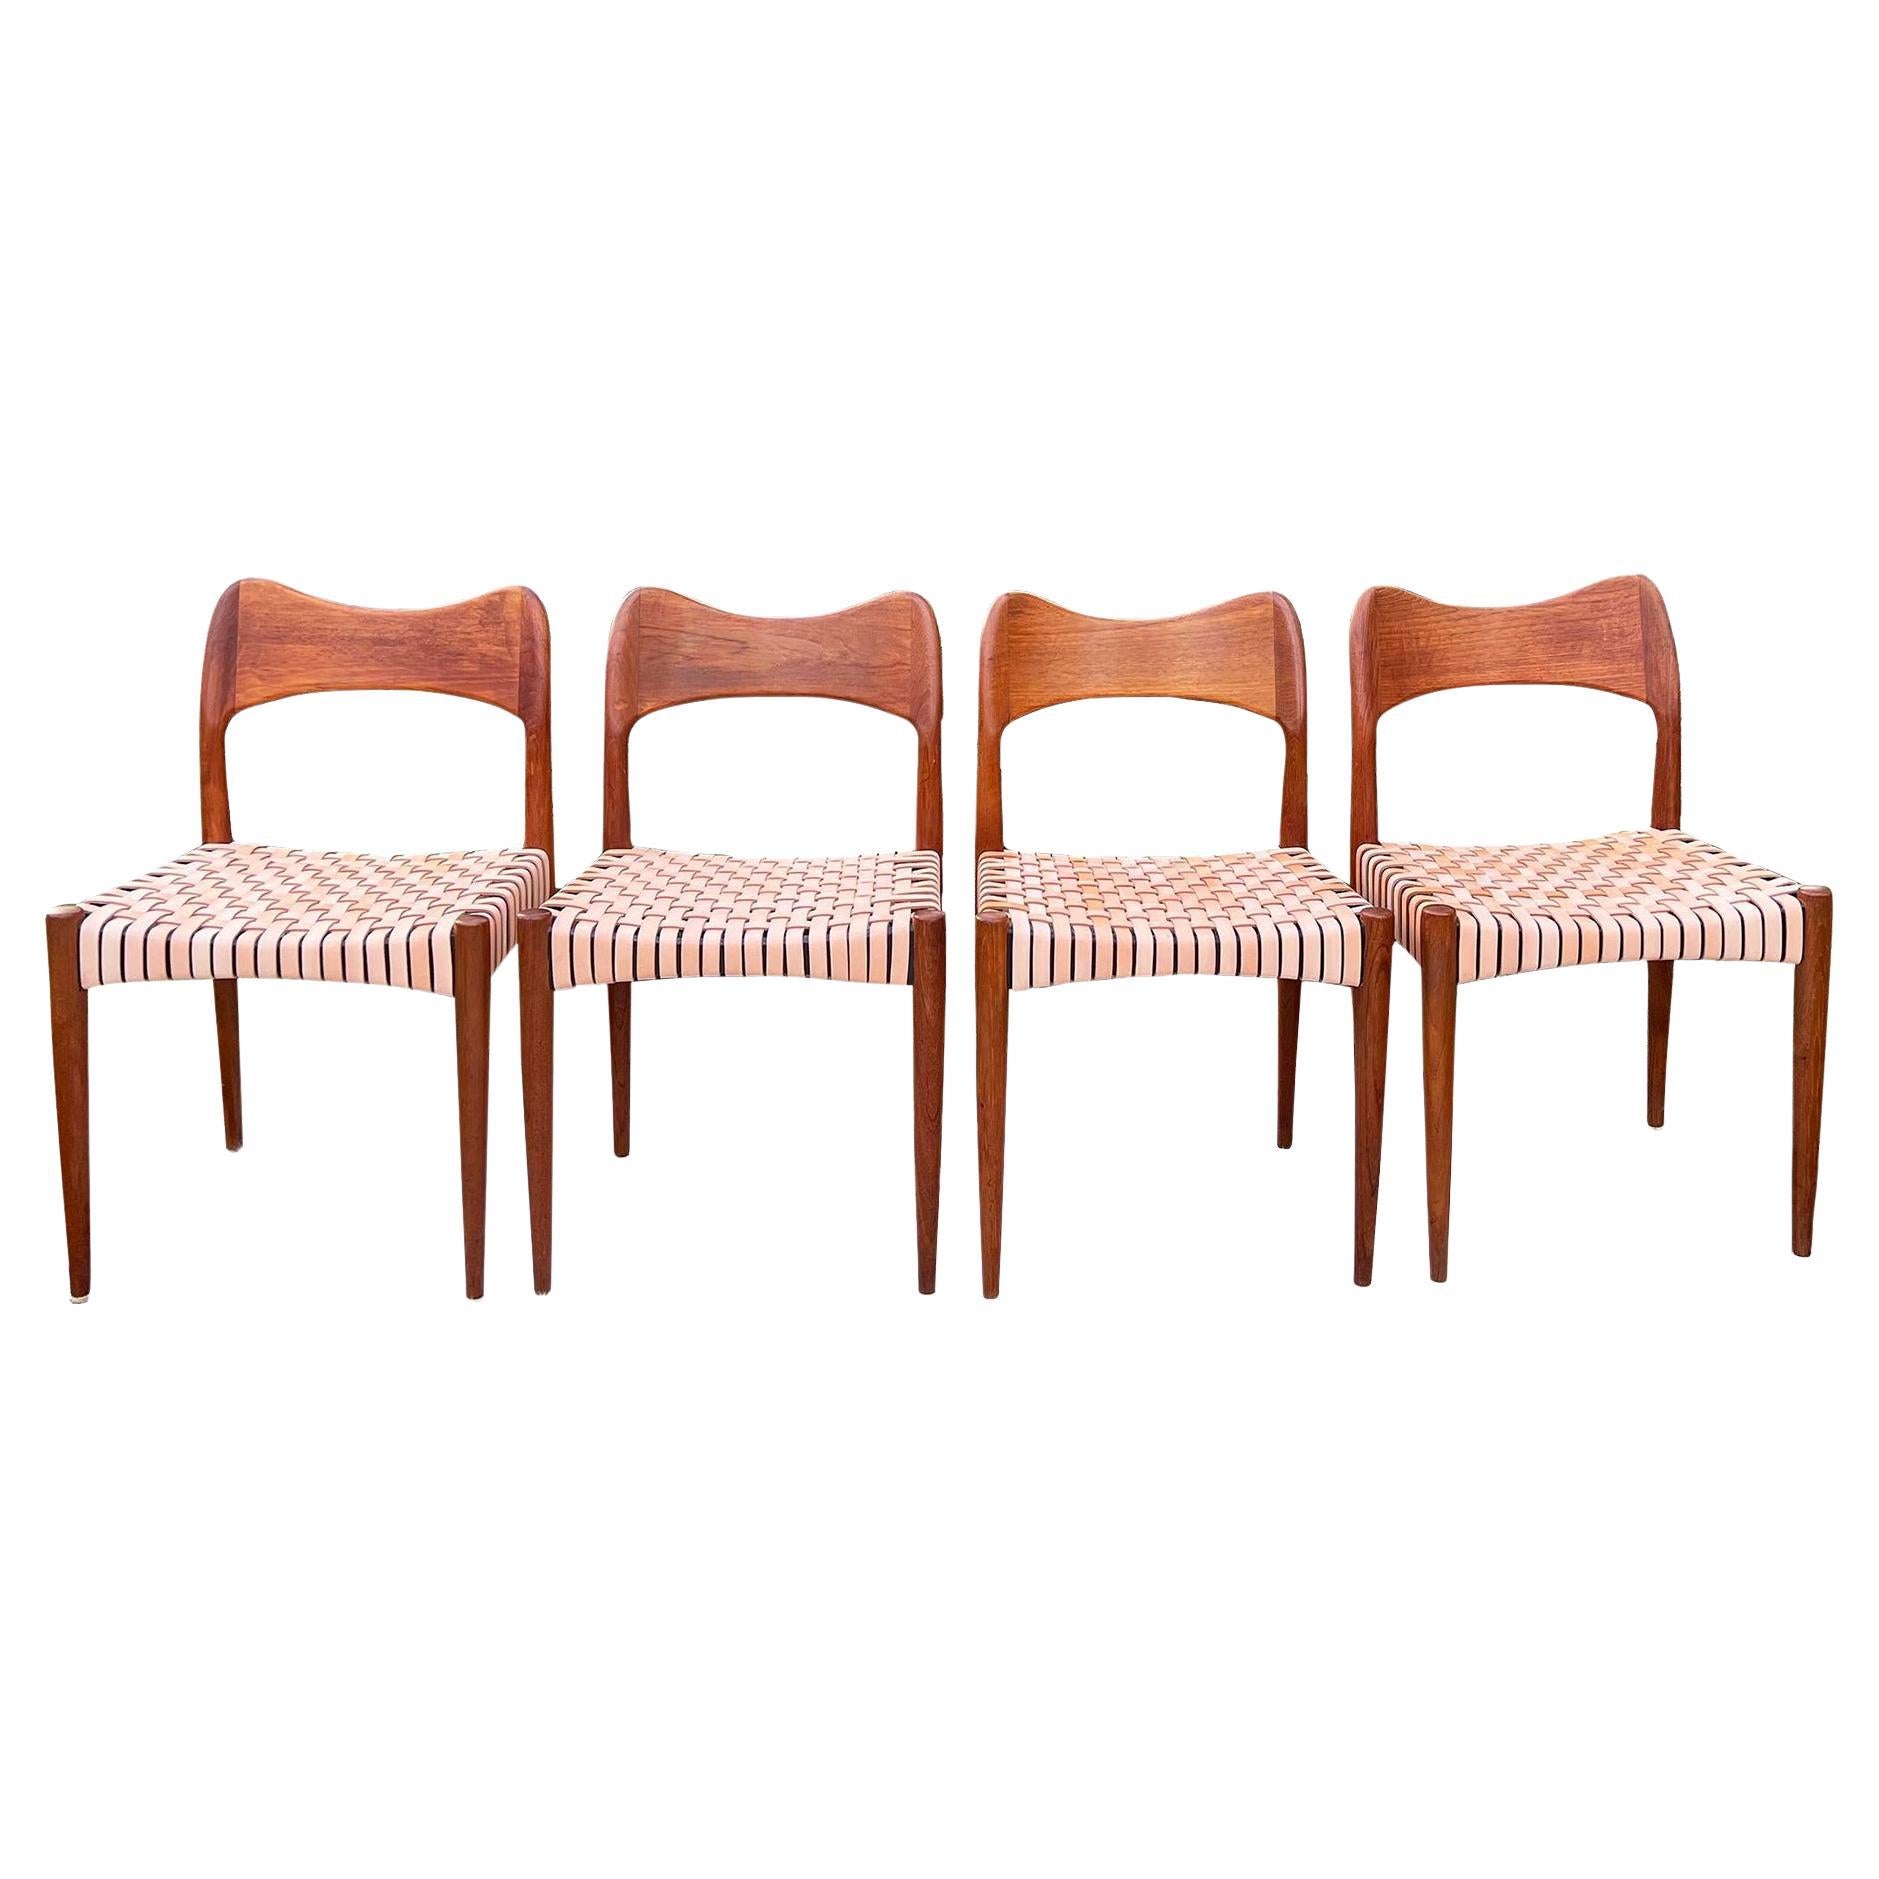 Mogens Kold Møbelfabrik Chairs